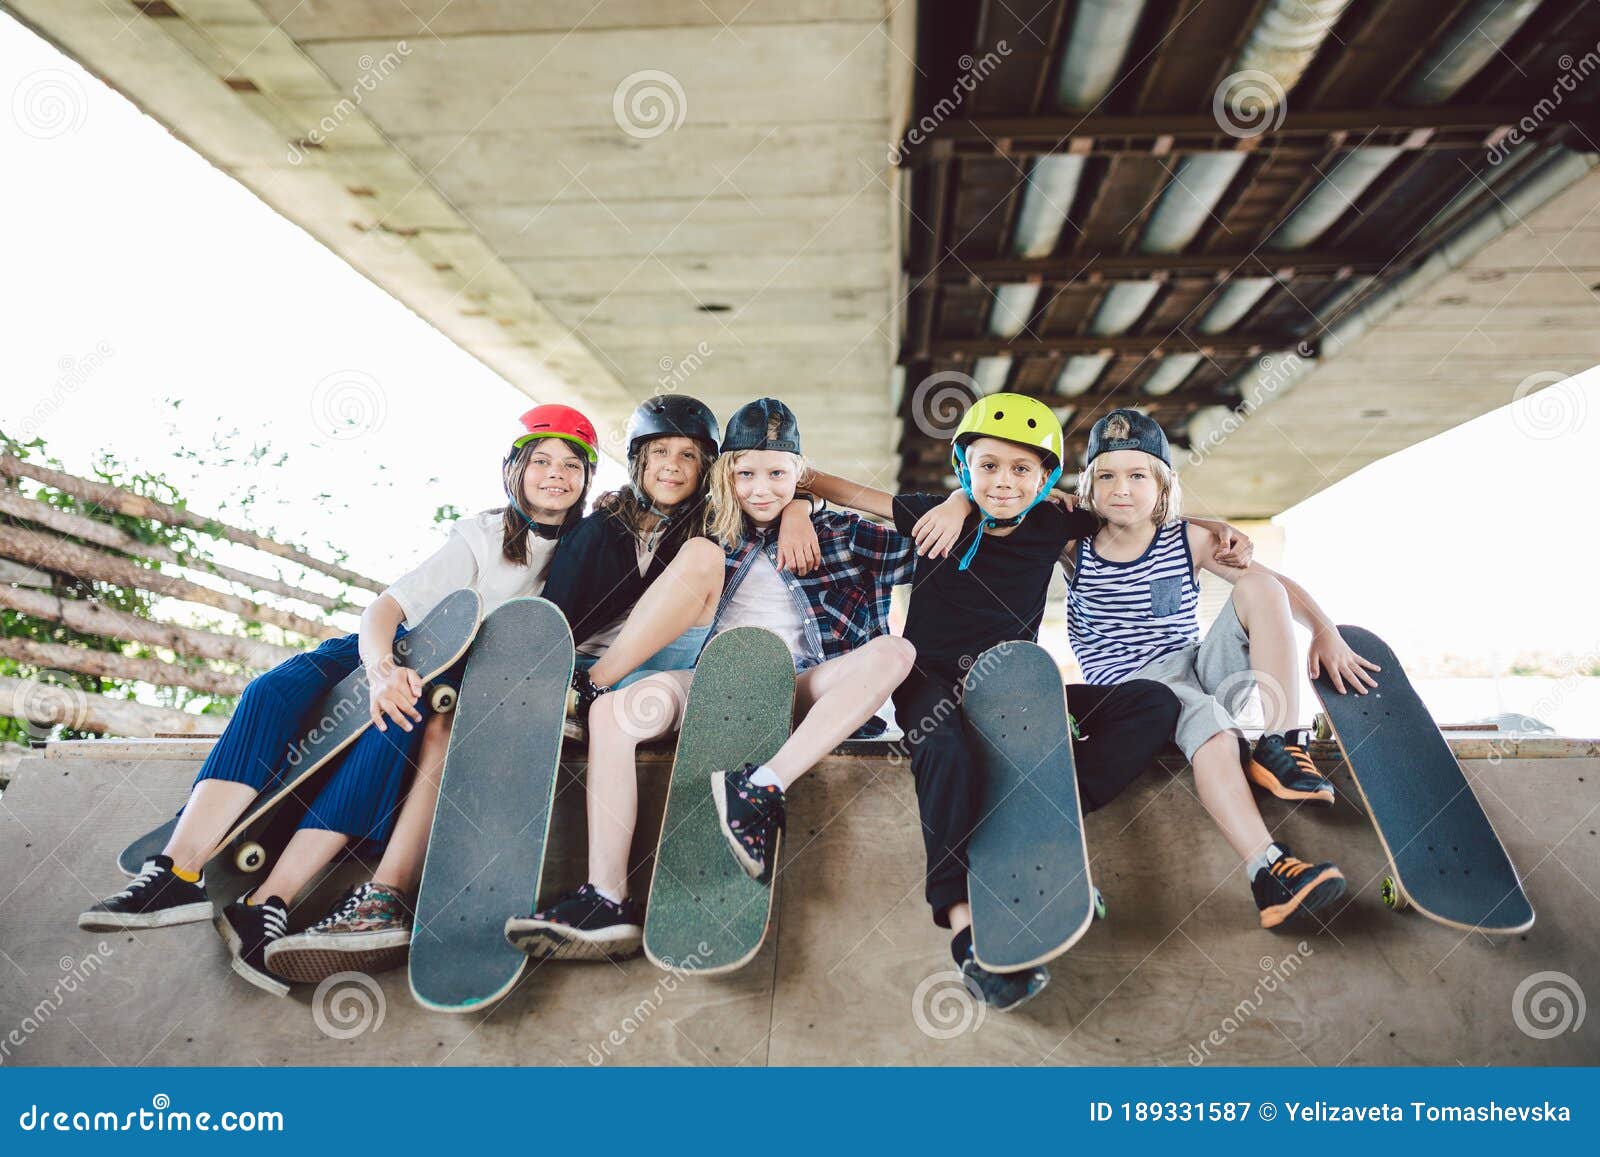 boerderij Mantsjoerije Instituut Extreme Sport in City. Skateboarding Club for Children. Group Friends  Posing on Ramp at Skatepark Stock Image - Image of children, people:  189331587